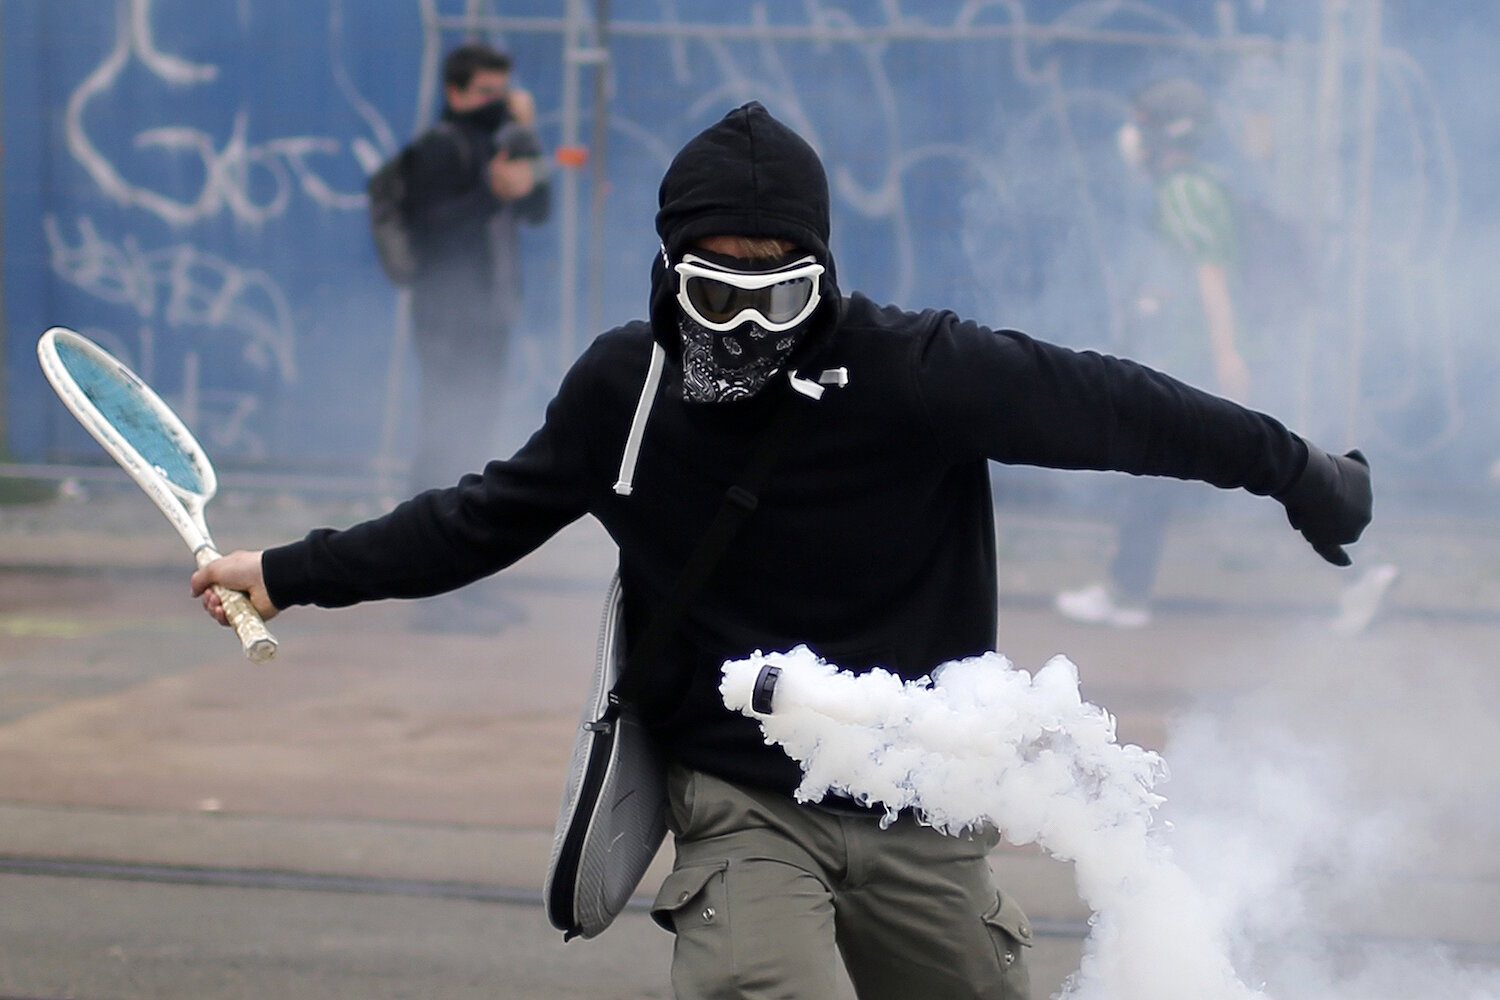 <p>2 июня. Нант, Франция.&nbsp;Протестующий использует ракетку, чтобы отбросить назад слезоточивый газ во время акции против предложенных правительство реформ трудового права.</p>